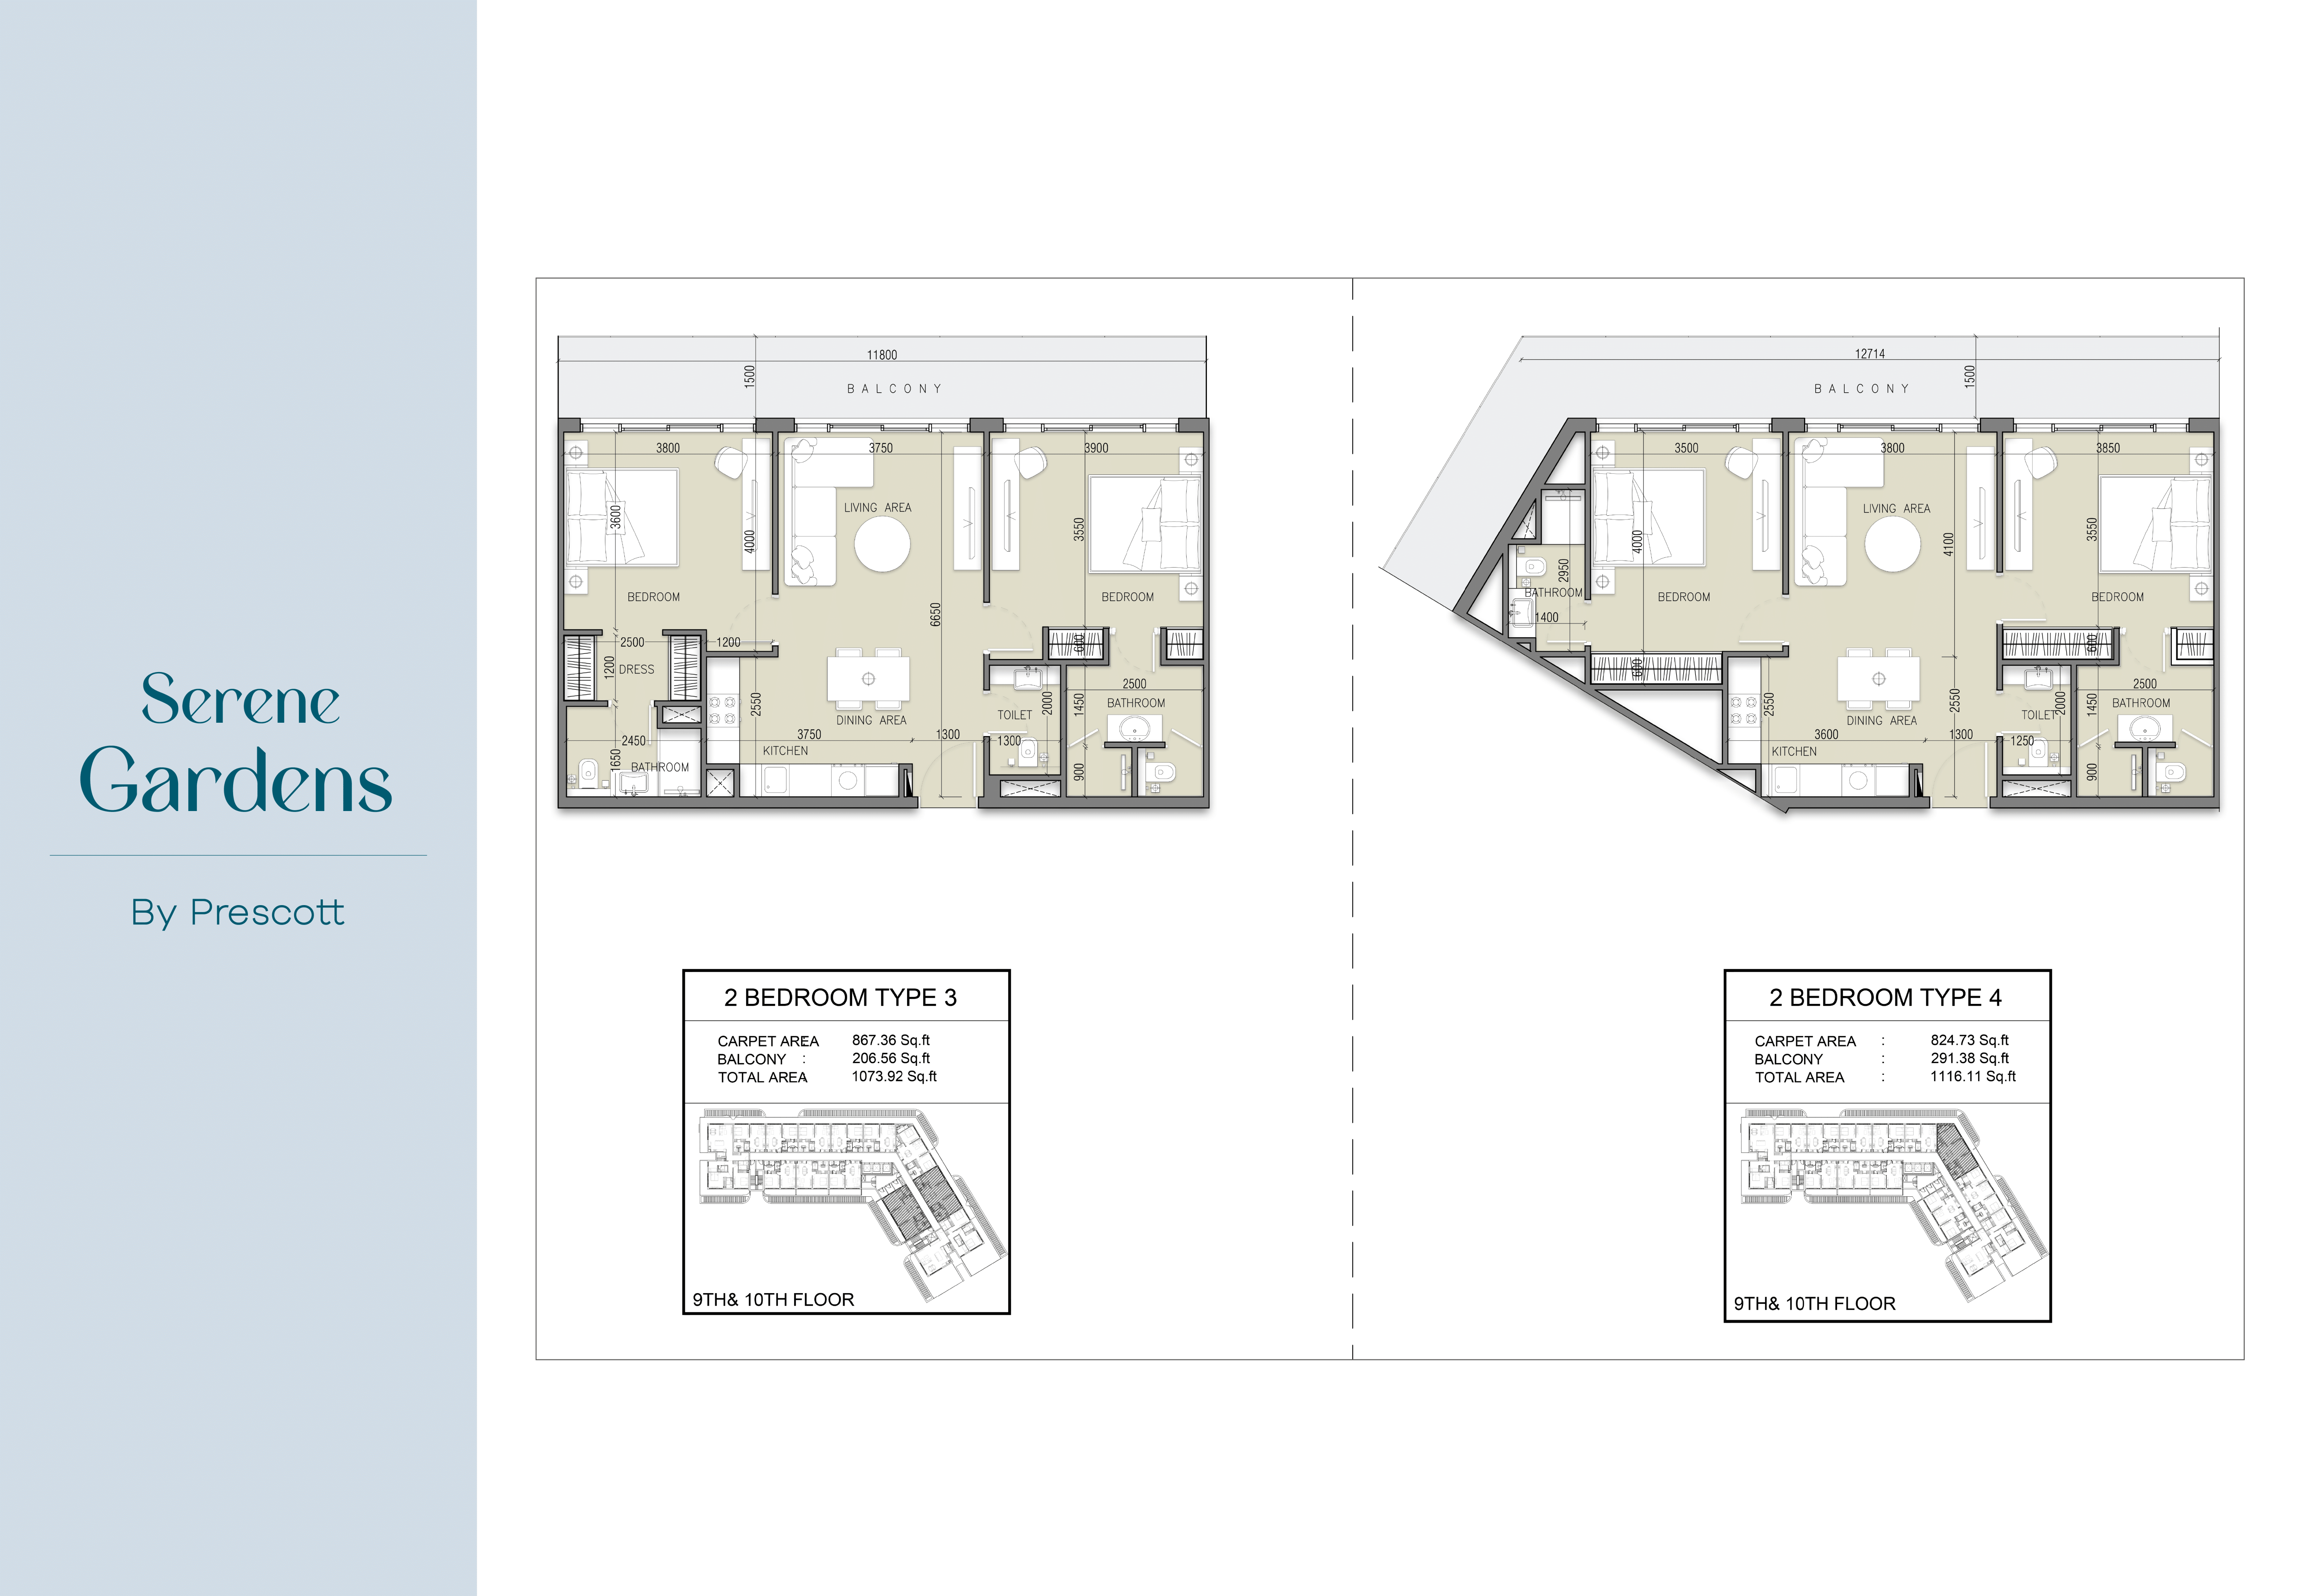 Appartement de luxe avec deux chambres à SERENE GARDENS (Unité 1011, Type 3)